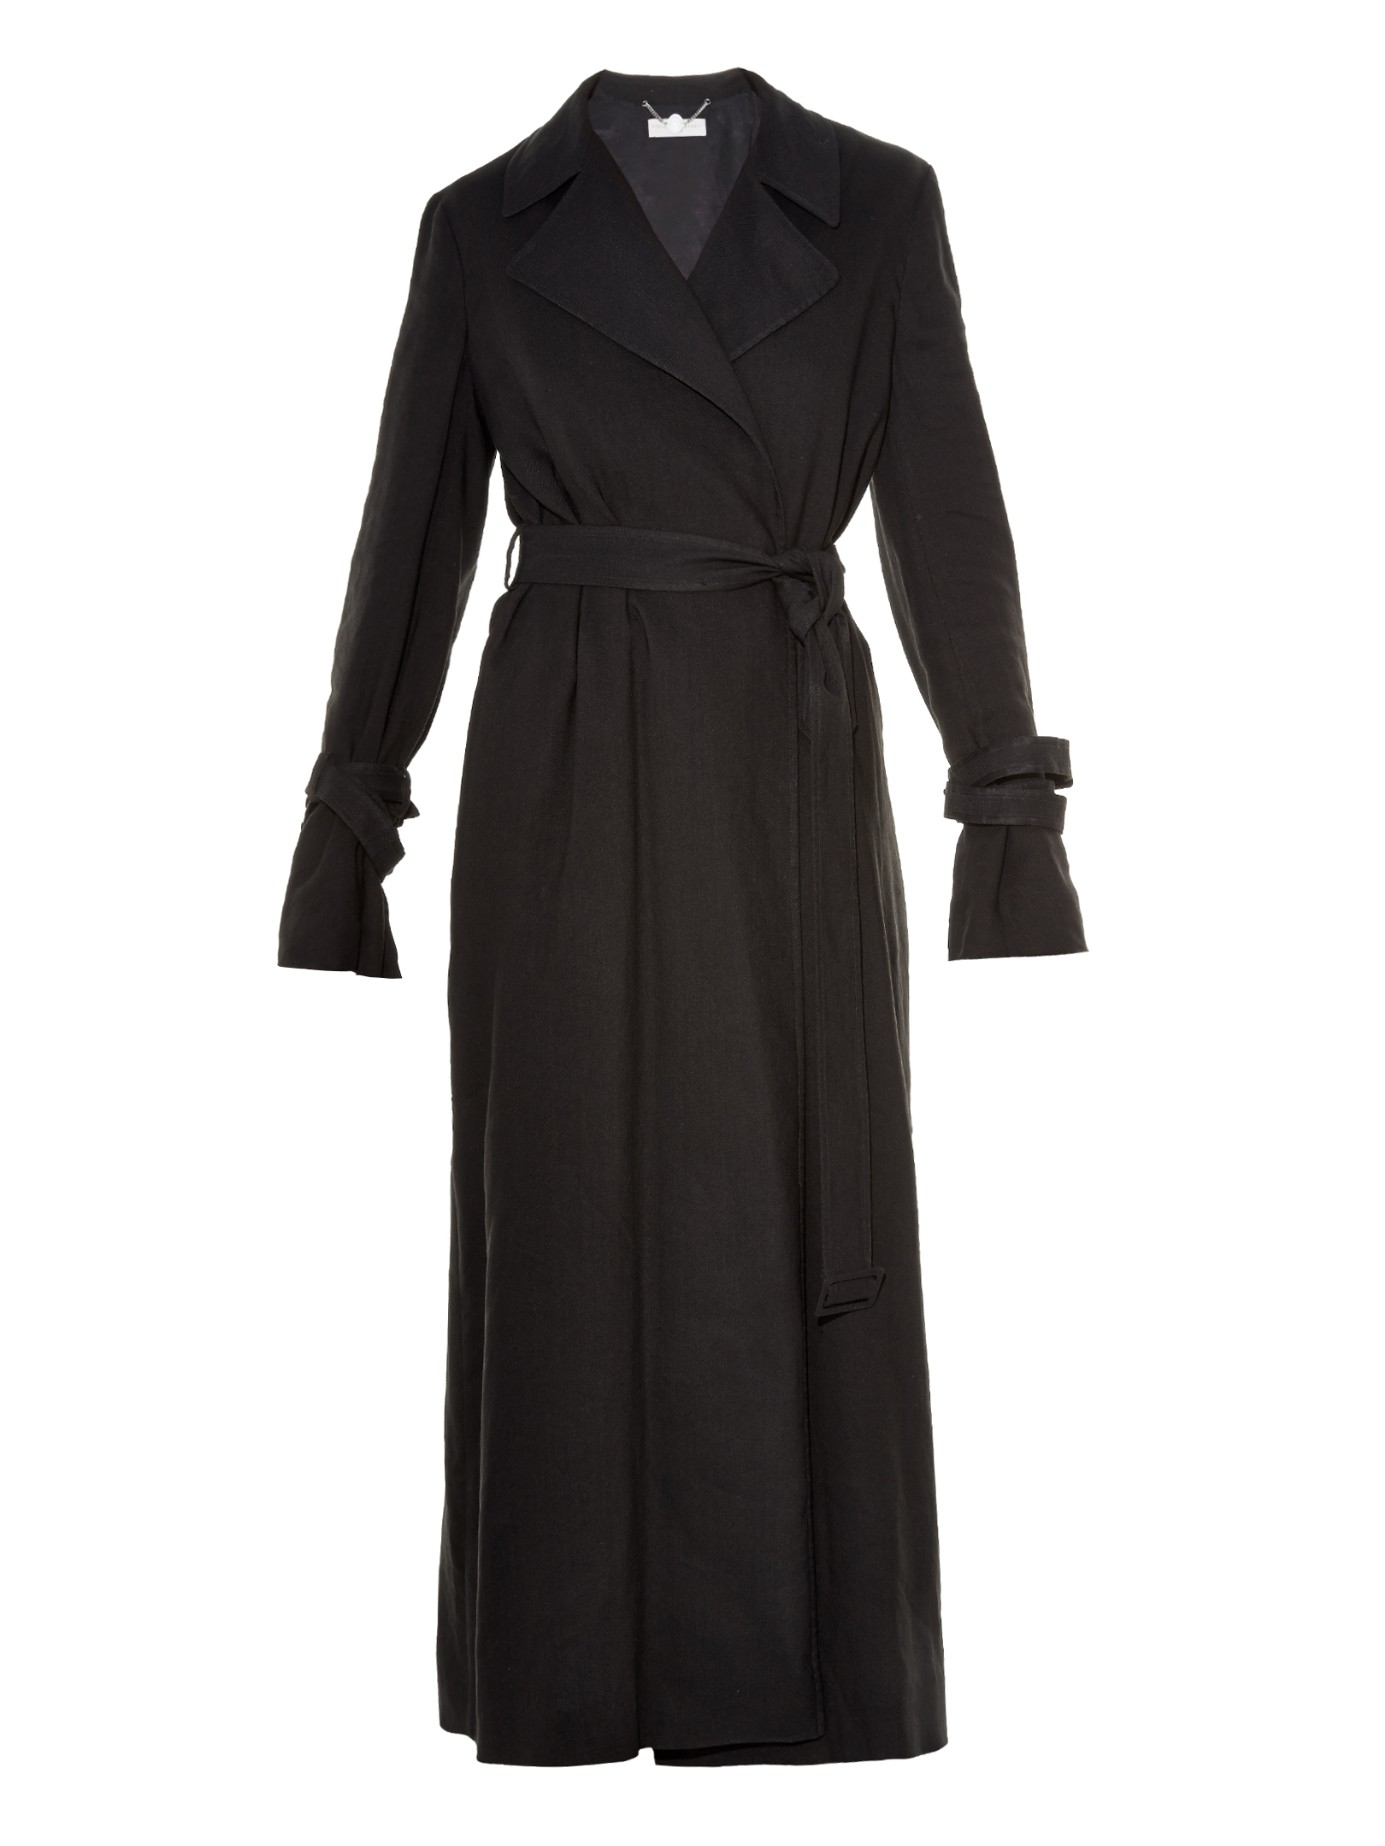 Stella mccartney Kezia Long Trench Coat in Black | Lyst